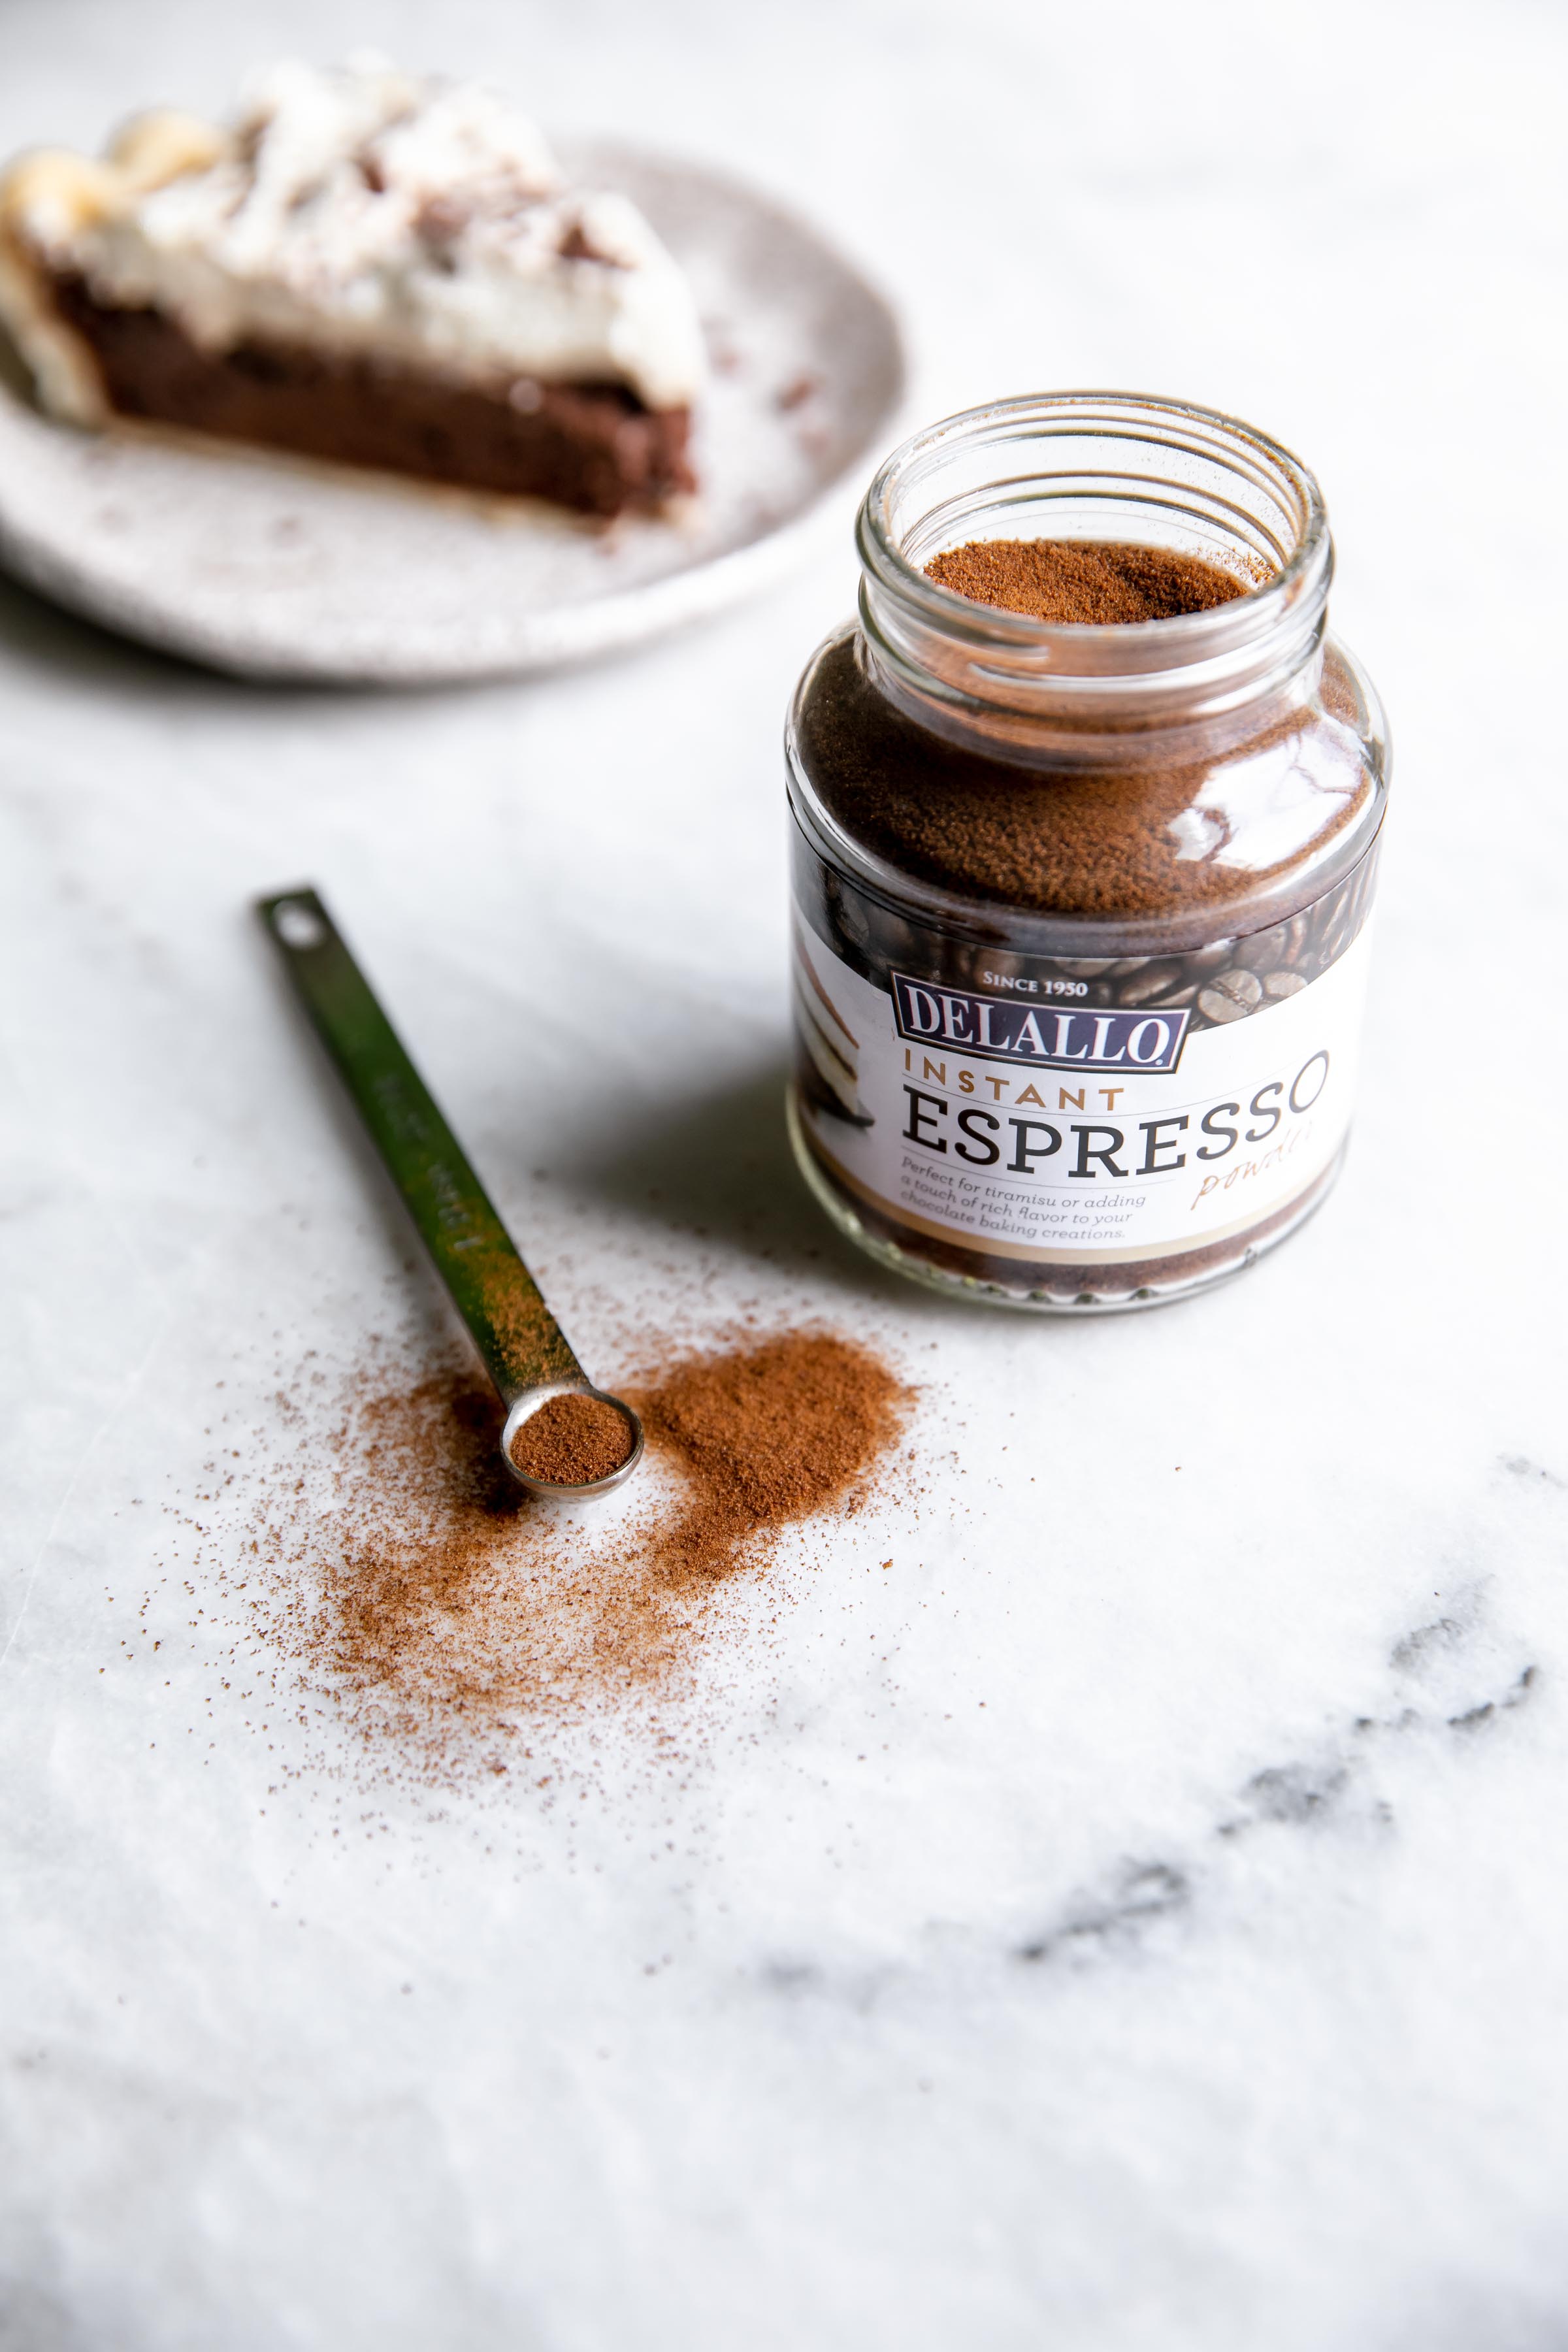 DeLallo espresso powder